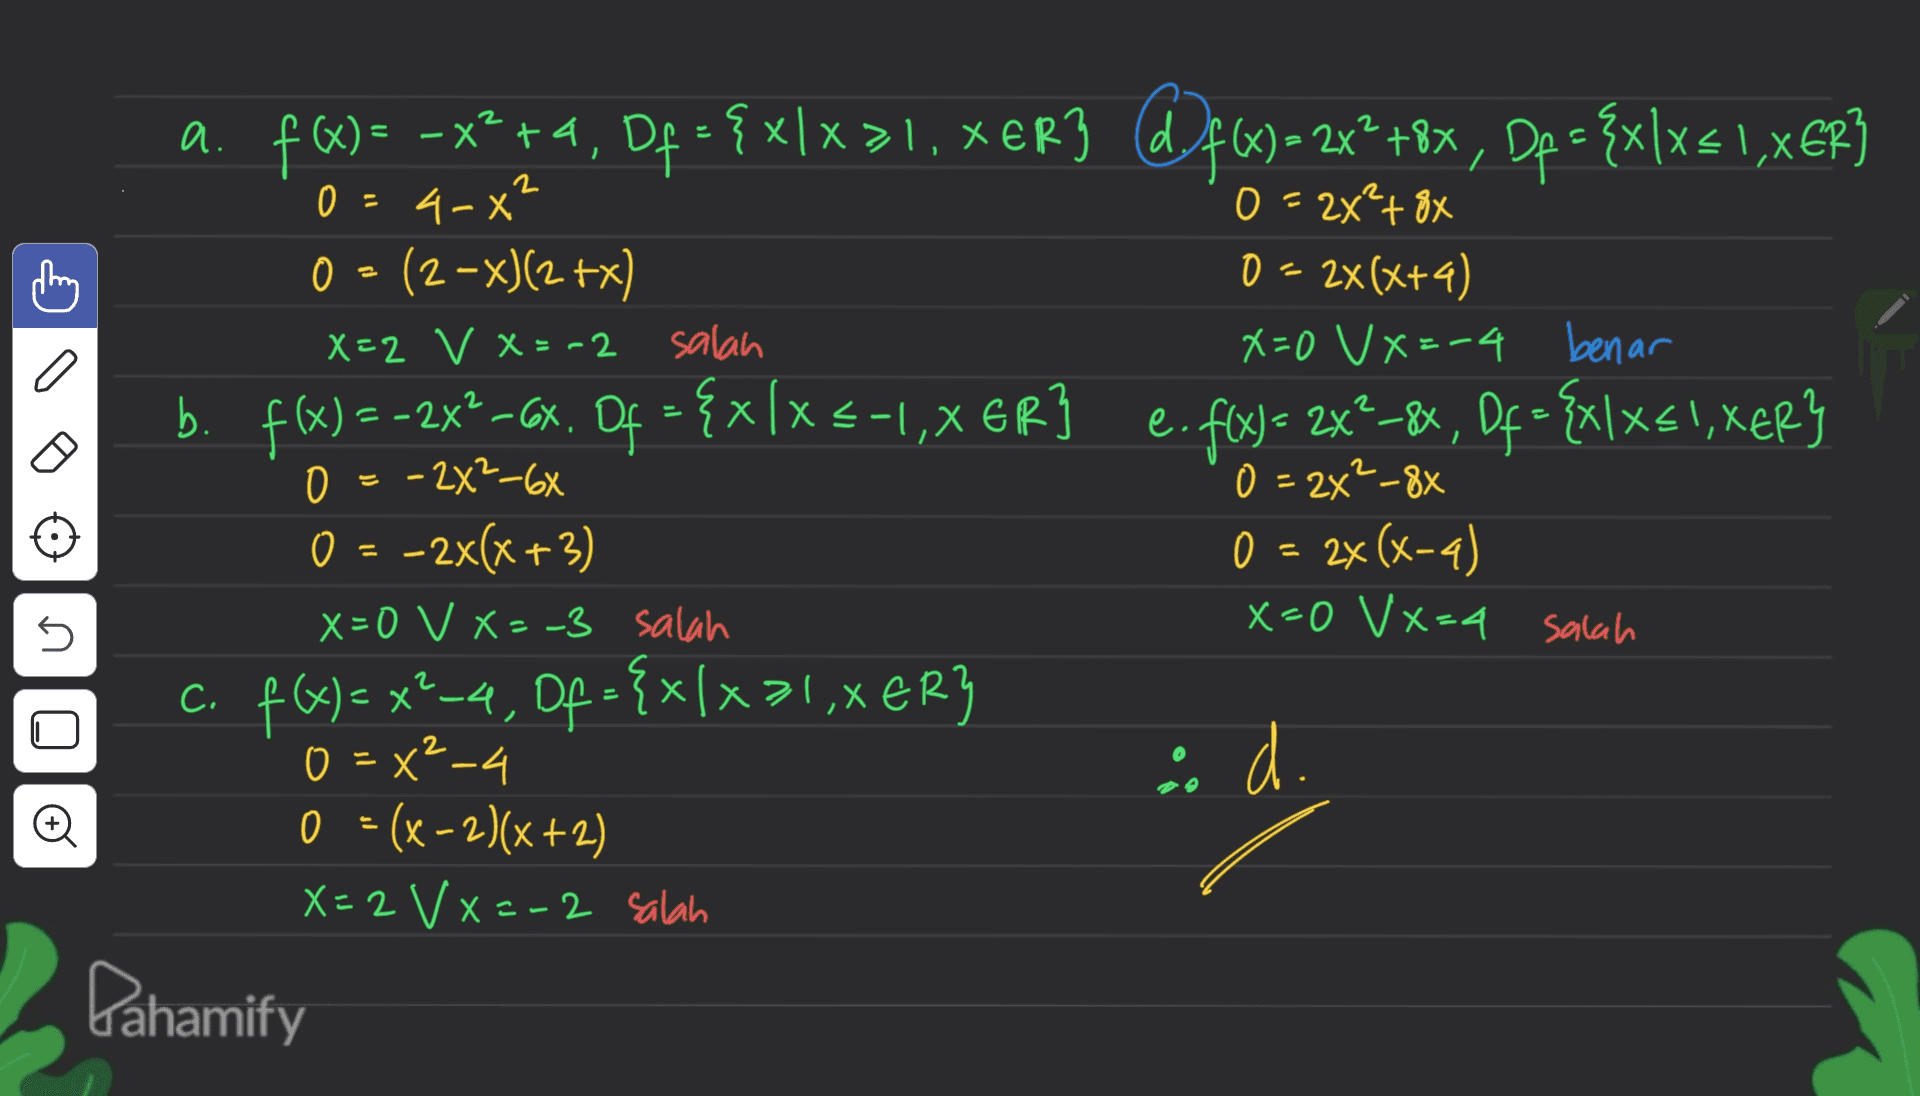 X < 2 0 - + = a. f)= -x2+4, Df = { x/x>1. XER3 d9f6) = 2x2 +8x, Dp = {x\x{1,XER] – xlx ( x 4-x" 0 = 2x²+ 8x 0 = (2-x)(2+x) 0 = 2x(x+4) X=2 V X=-2 salah X=0 V X=-4 benar b. . f(x) = -2X®-CX Of = {x[x -1,XER] e. fix) = 2x2–84, Df= {x\xs!, XER} 0 = -2X2-6X - 0 = 2x²_88 O = -2x(x+3) 0 = 2x(x-4) X=0 V X=-3 salah x=0 Vx=4 salah c. f(x) = x²-4, Of = {x/xal,XER} (-4 } 0 = x2-4 i d. 0 = (x - 2)(x+2) X=2 VX=-2 salah Dahamify 5 o 